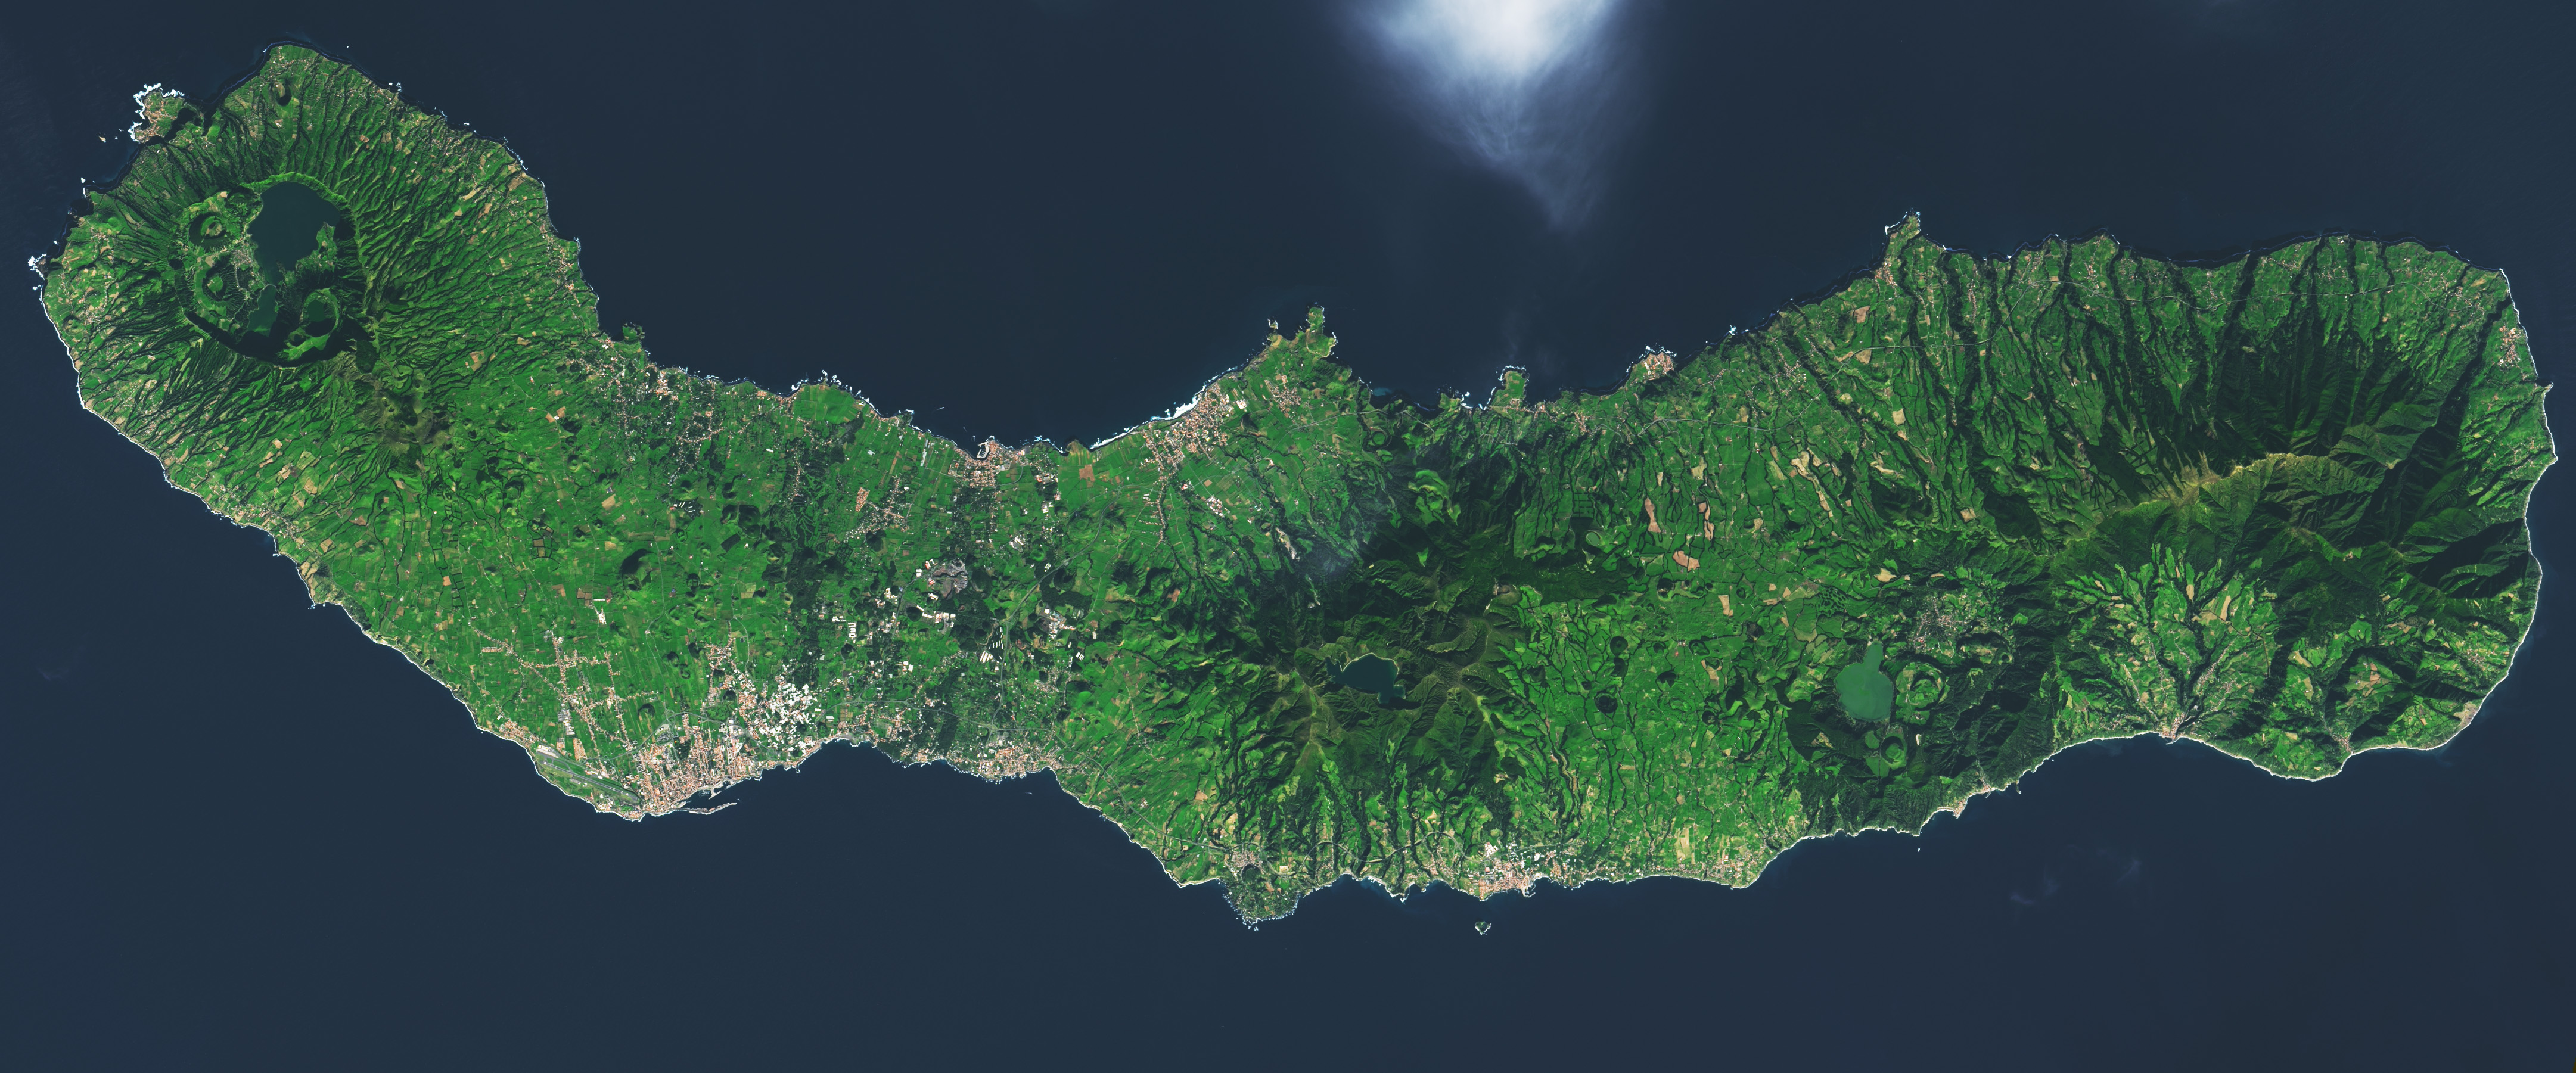 São Miguel, Azores - related image preview